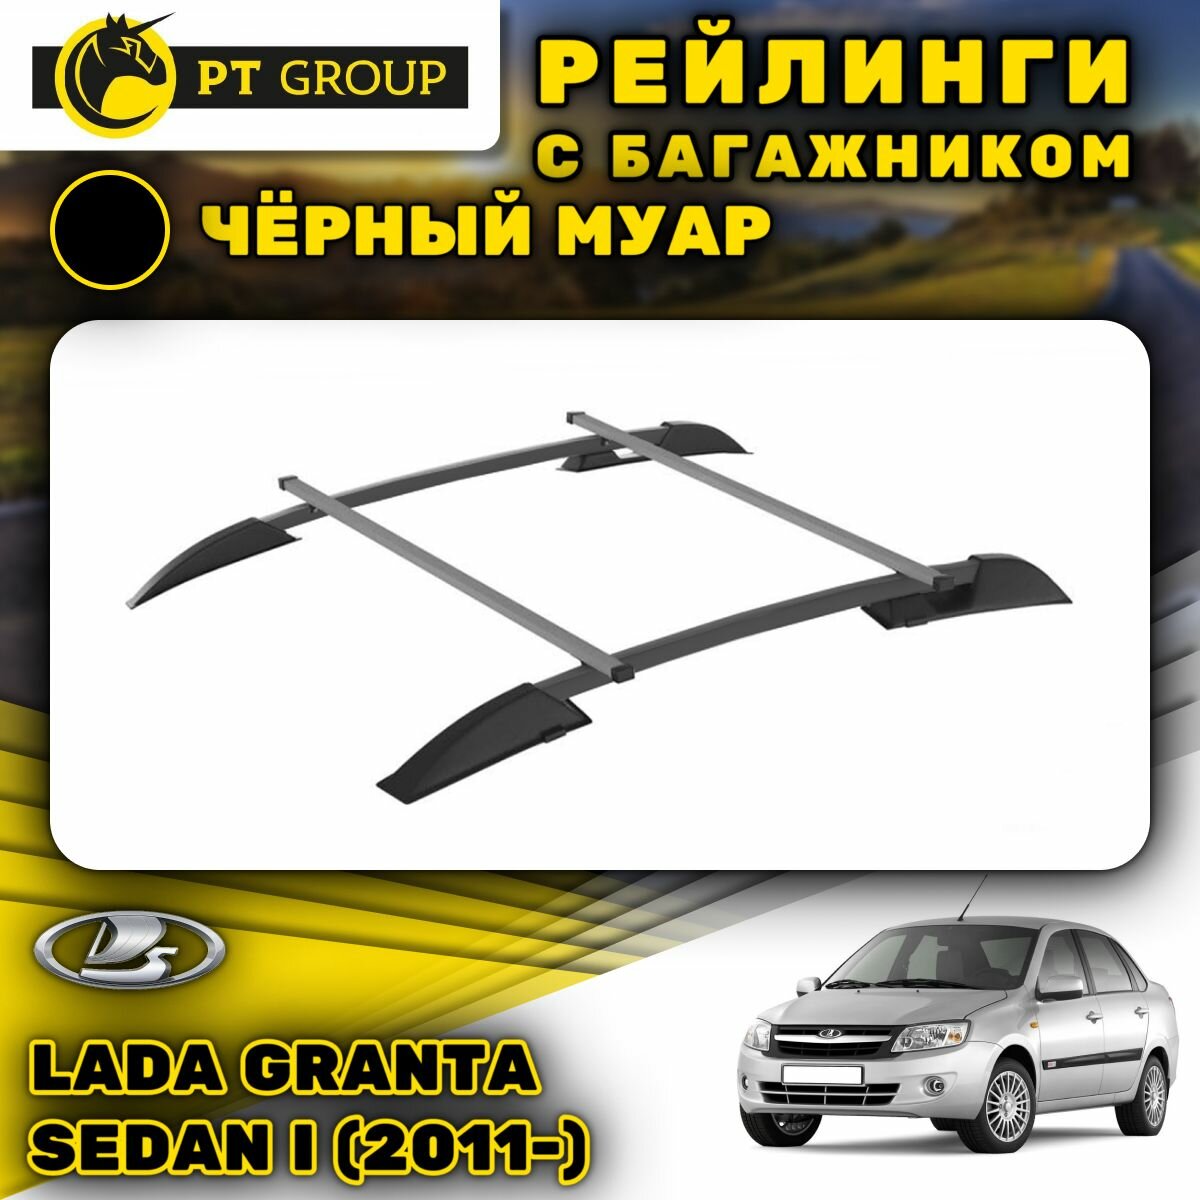 Рейлинги ПТ Групп "Усиленный" для Lada Granta Sedan I (2011-) (Лада Гранта), черный муар, (комплект 2 рейлинга + 2 поперечины)